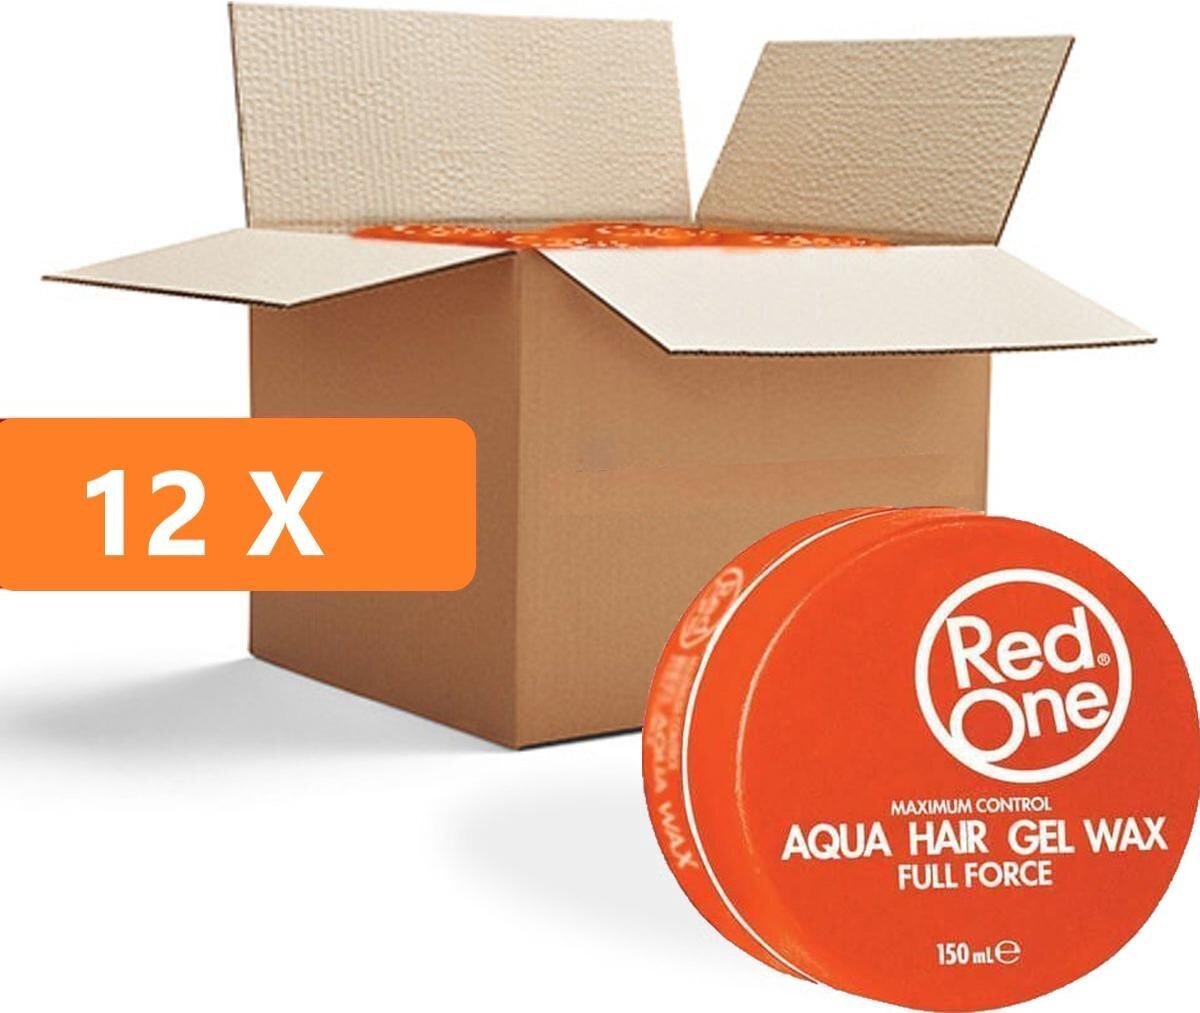 RedOne Orange Hair Wax| Haarwax| Haargel| Gel| Aqua wax| Oranje Aqua haarwax| 12 stuks| 12 pieces